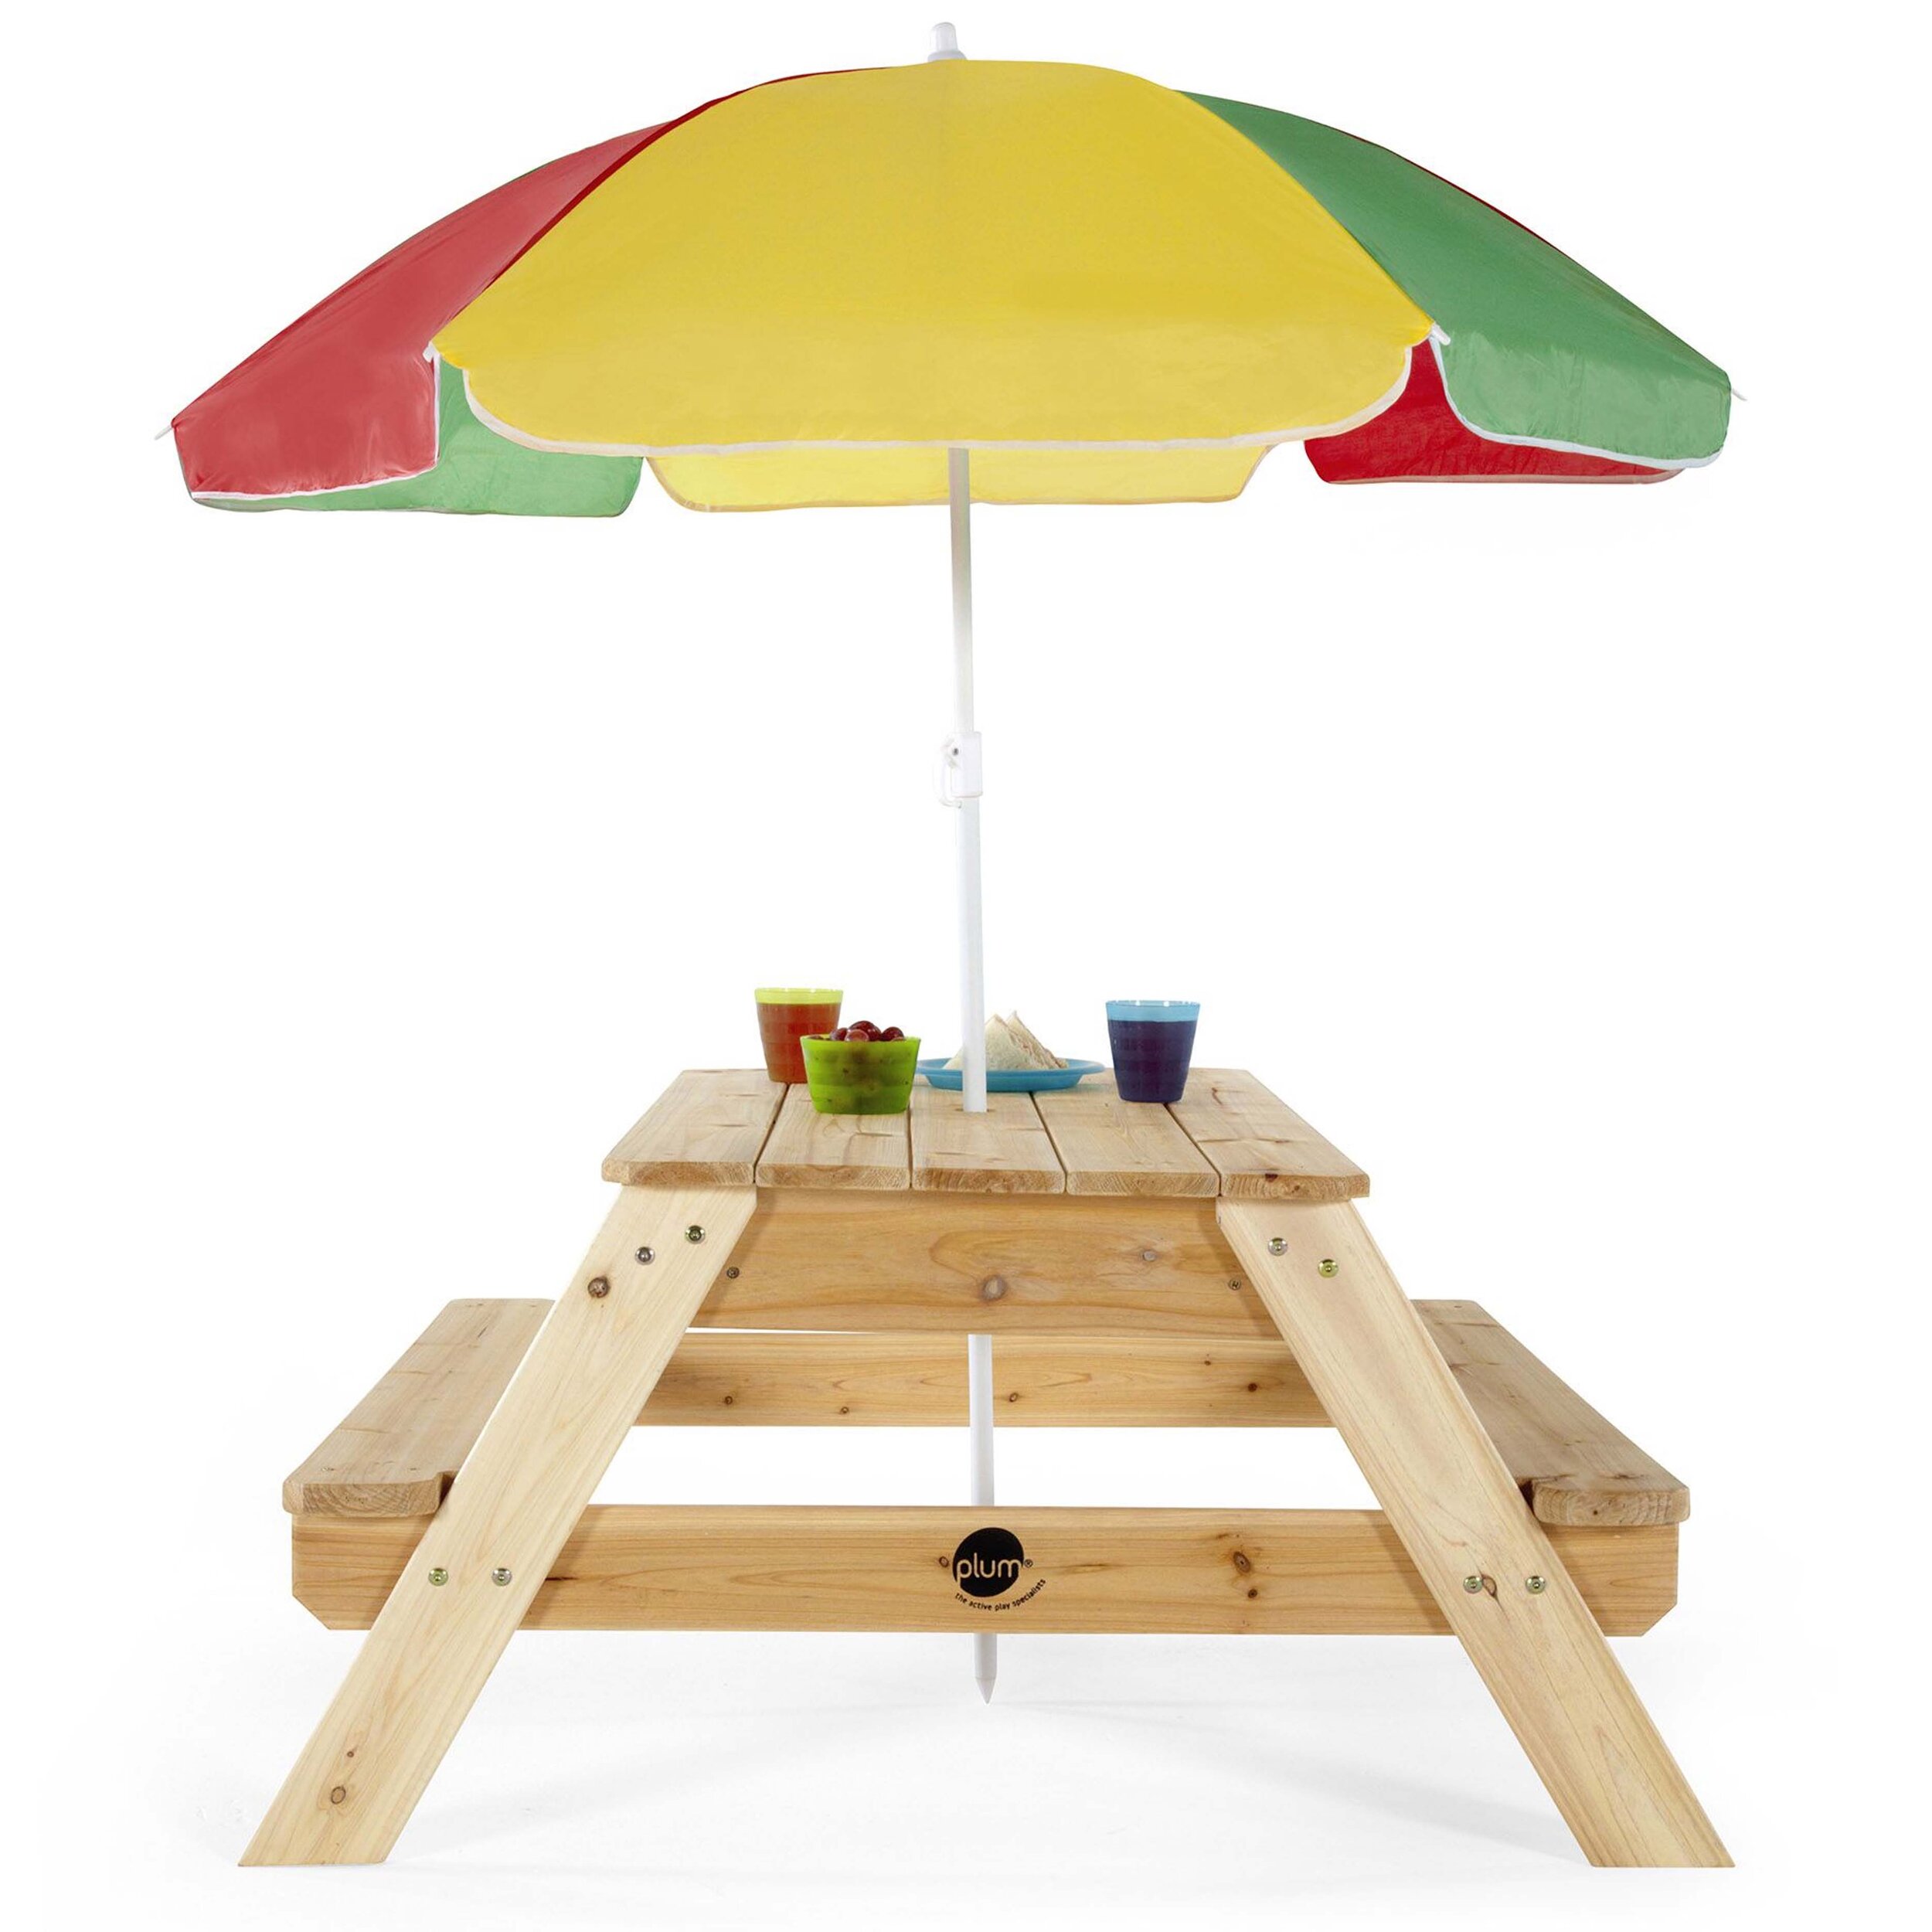 plum-tavolino-ombrellone-25075-legno-giochi-esterno-babylove2000-prodotto-laterale.jpg